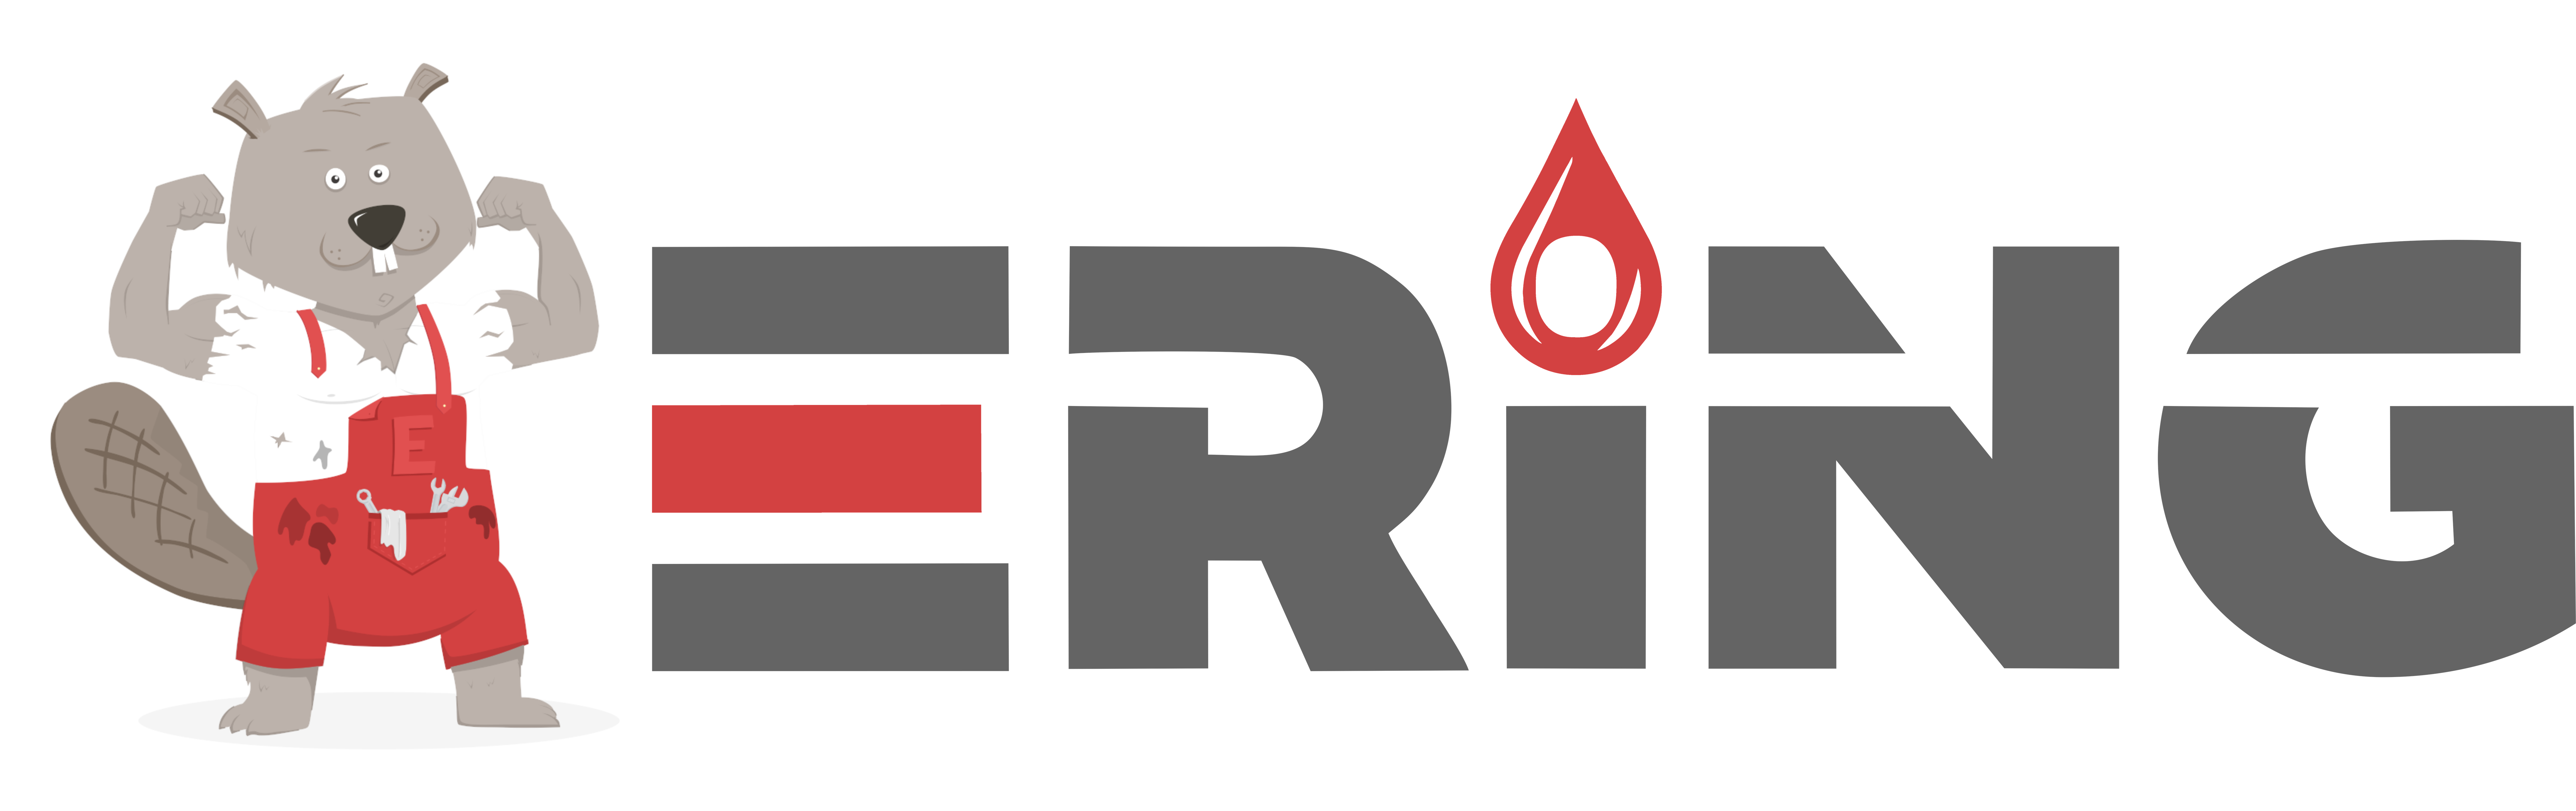 ering-logo.png